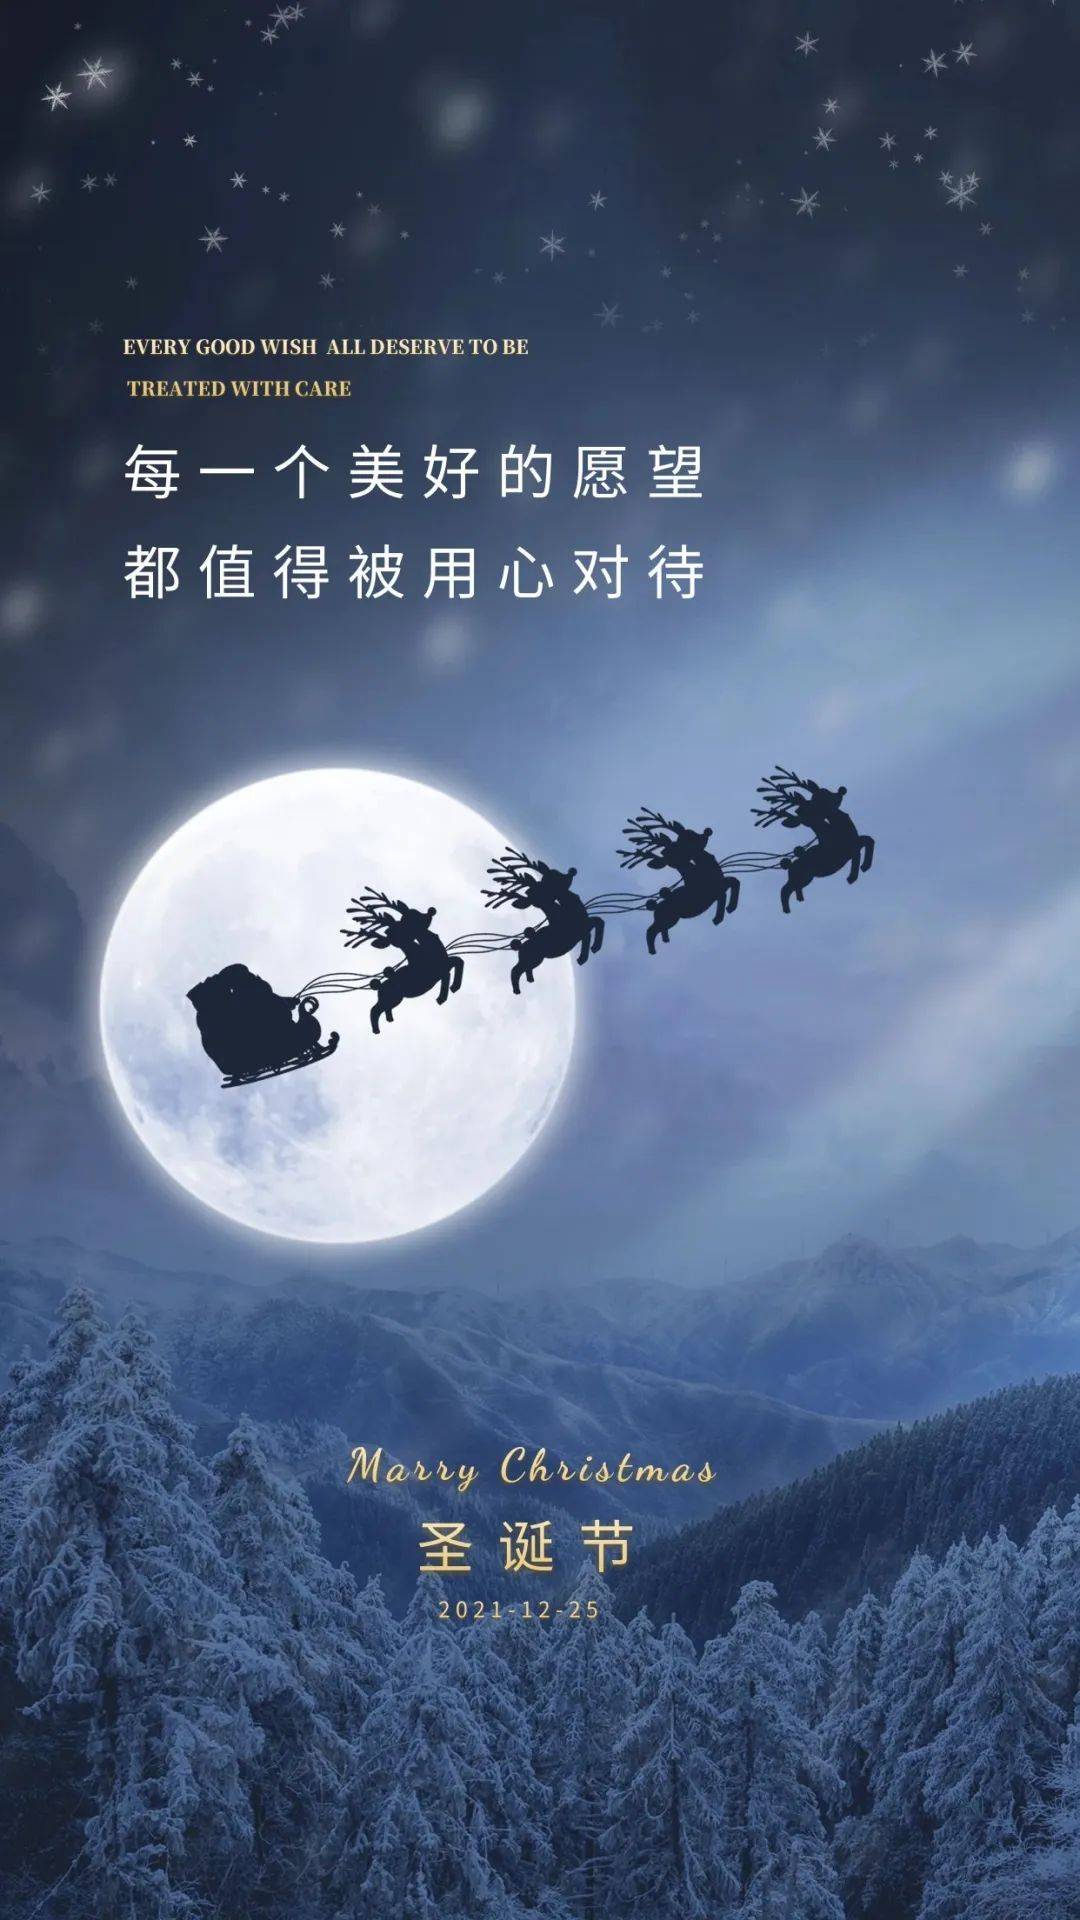 平安夜,圣诞节发朋友圈专属海报图片,圣诞节祝福文案说说